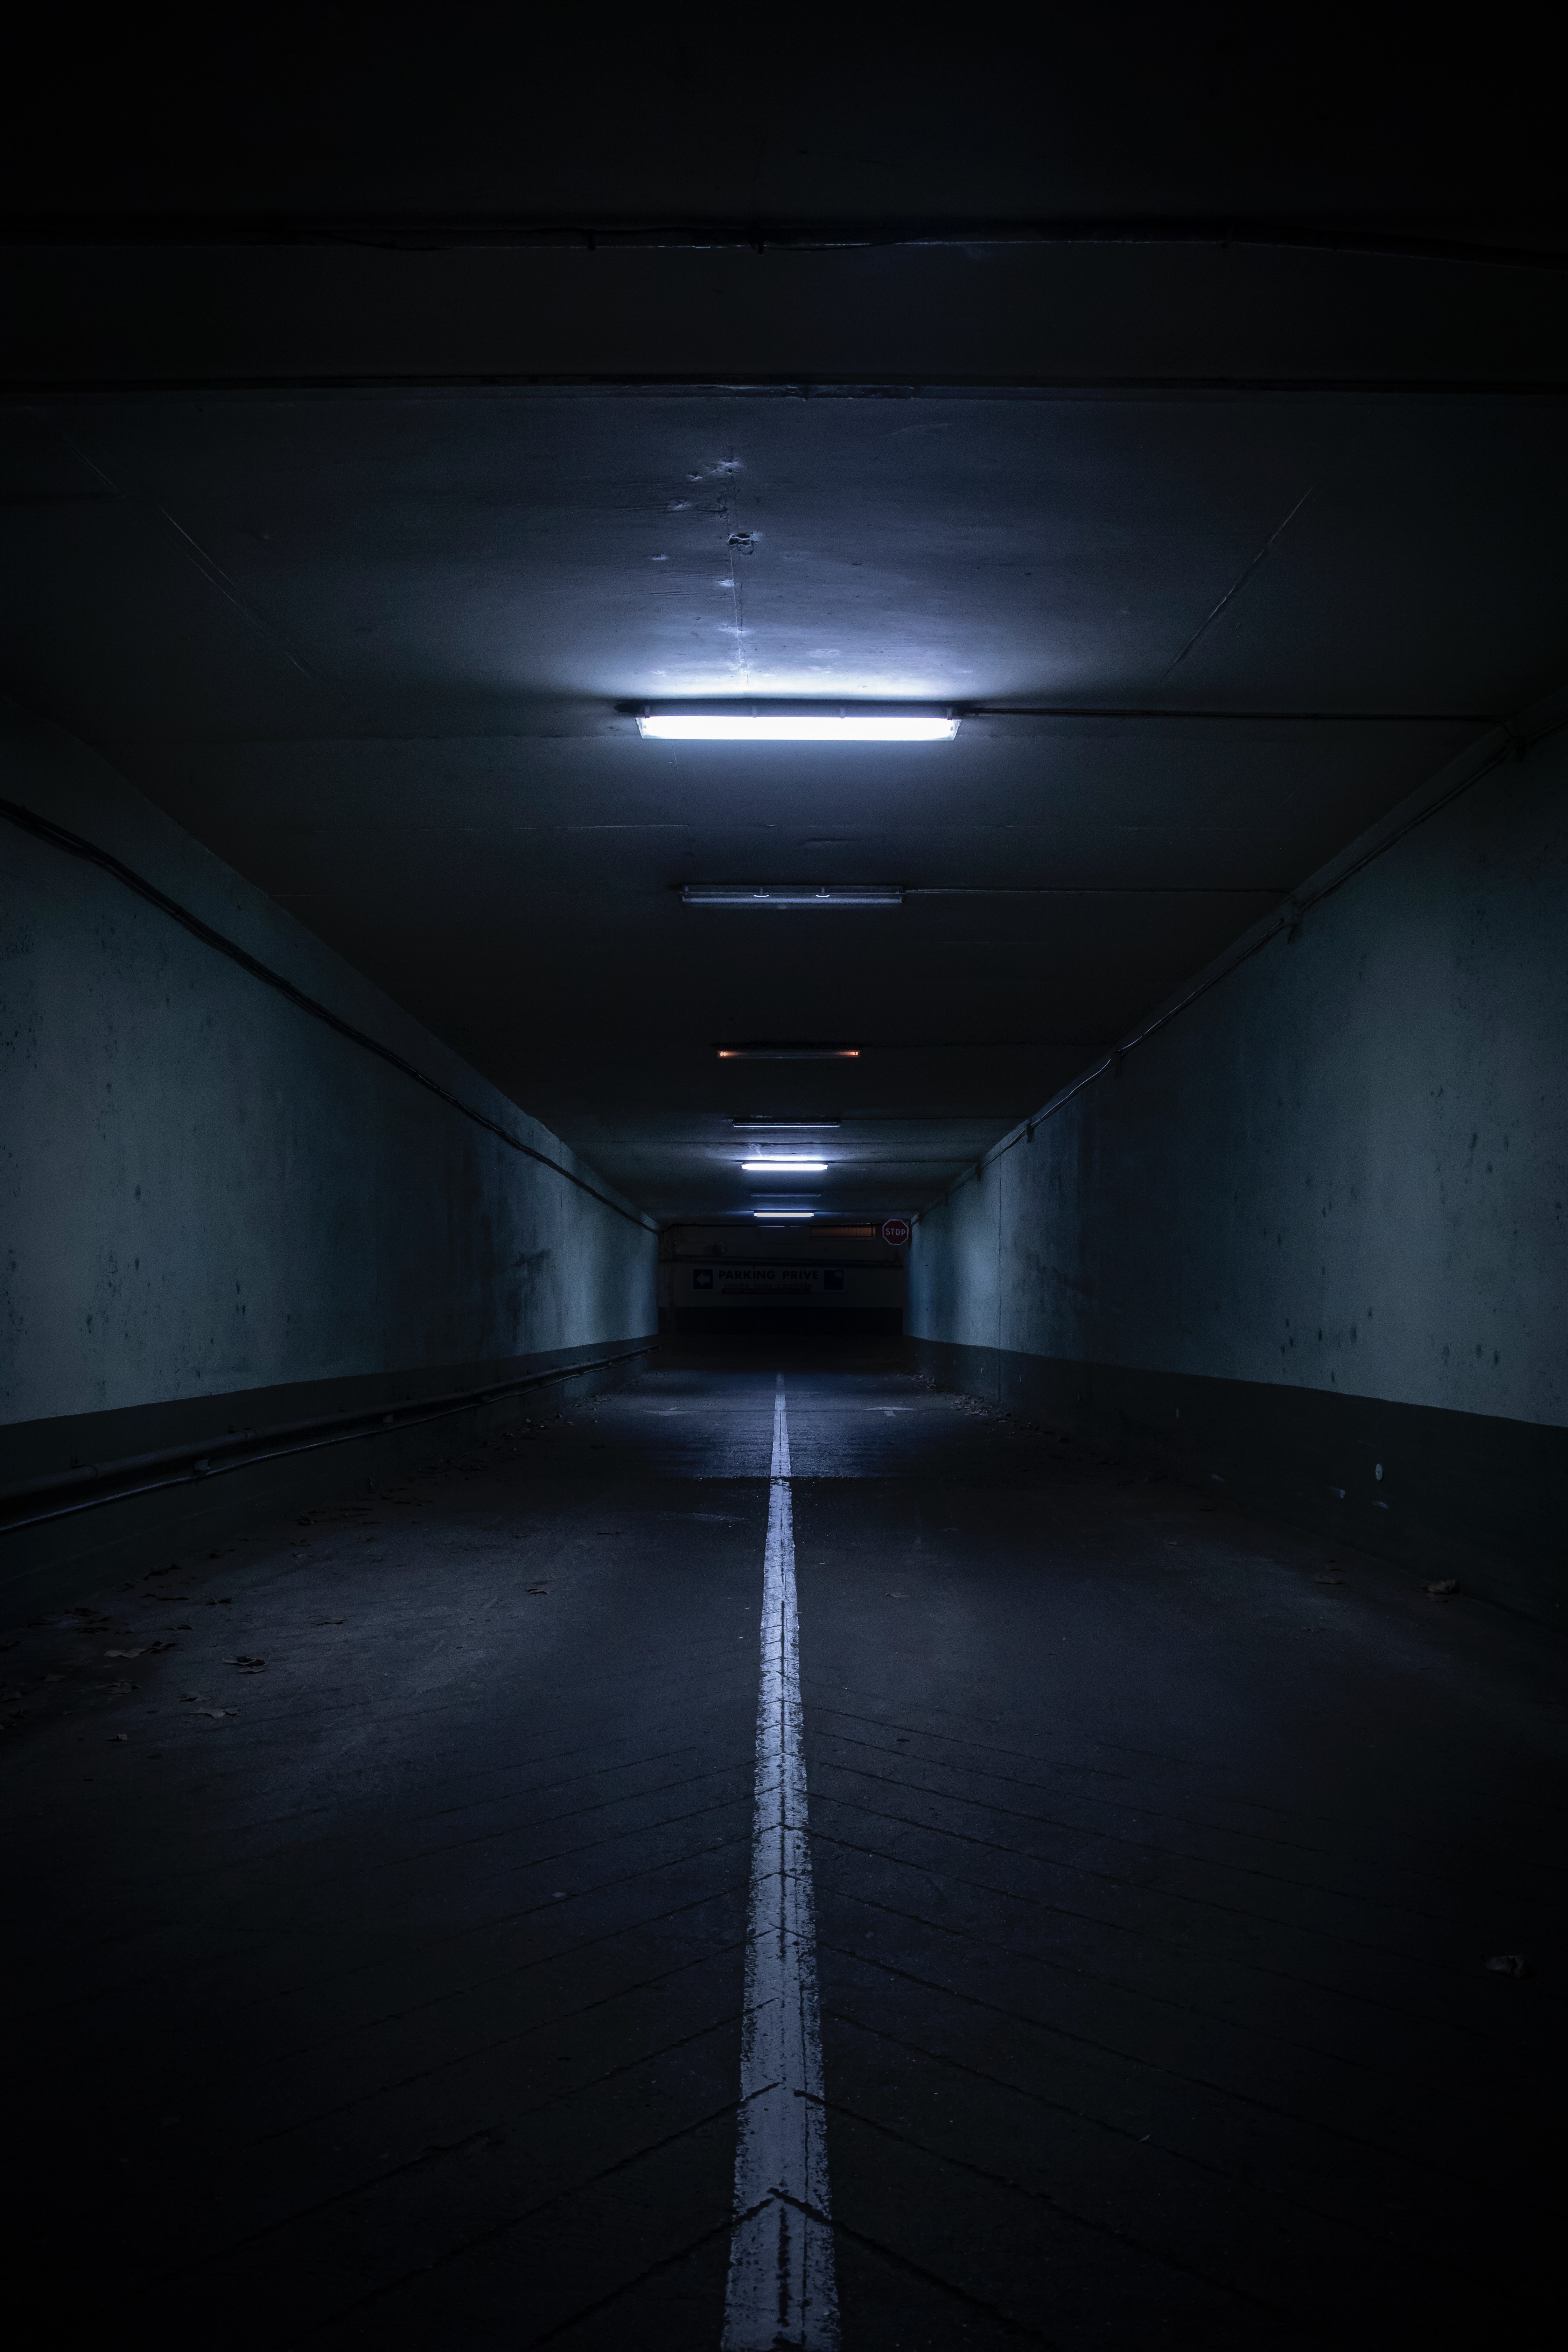 dark, tunnel, darkness, walls, underground, ceiling